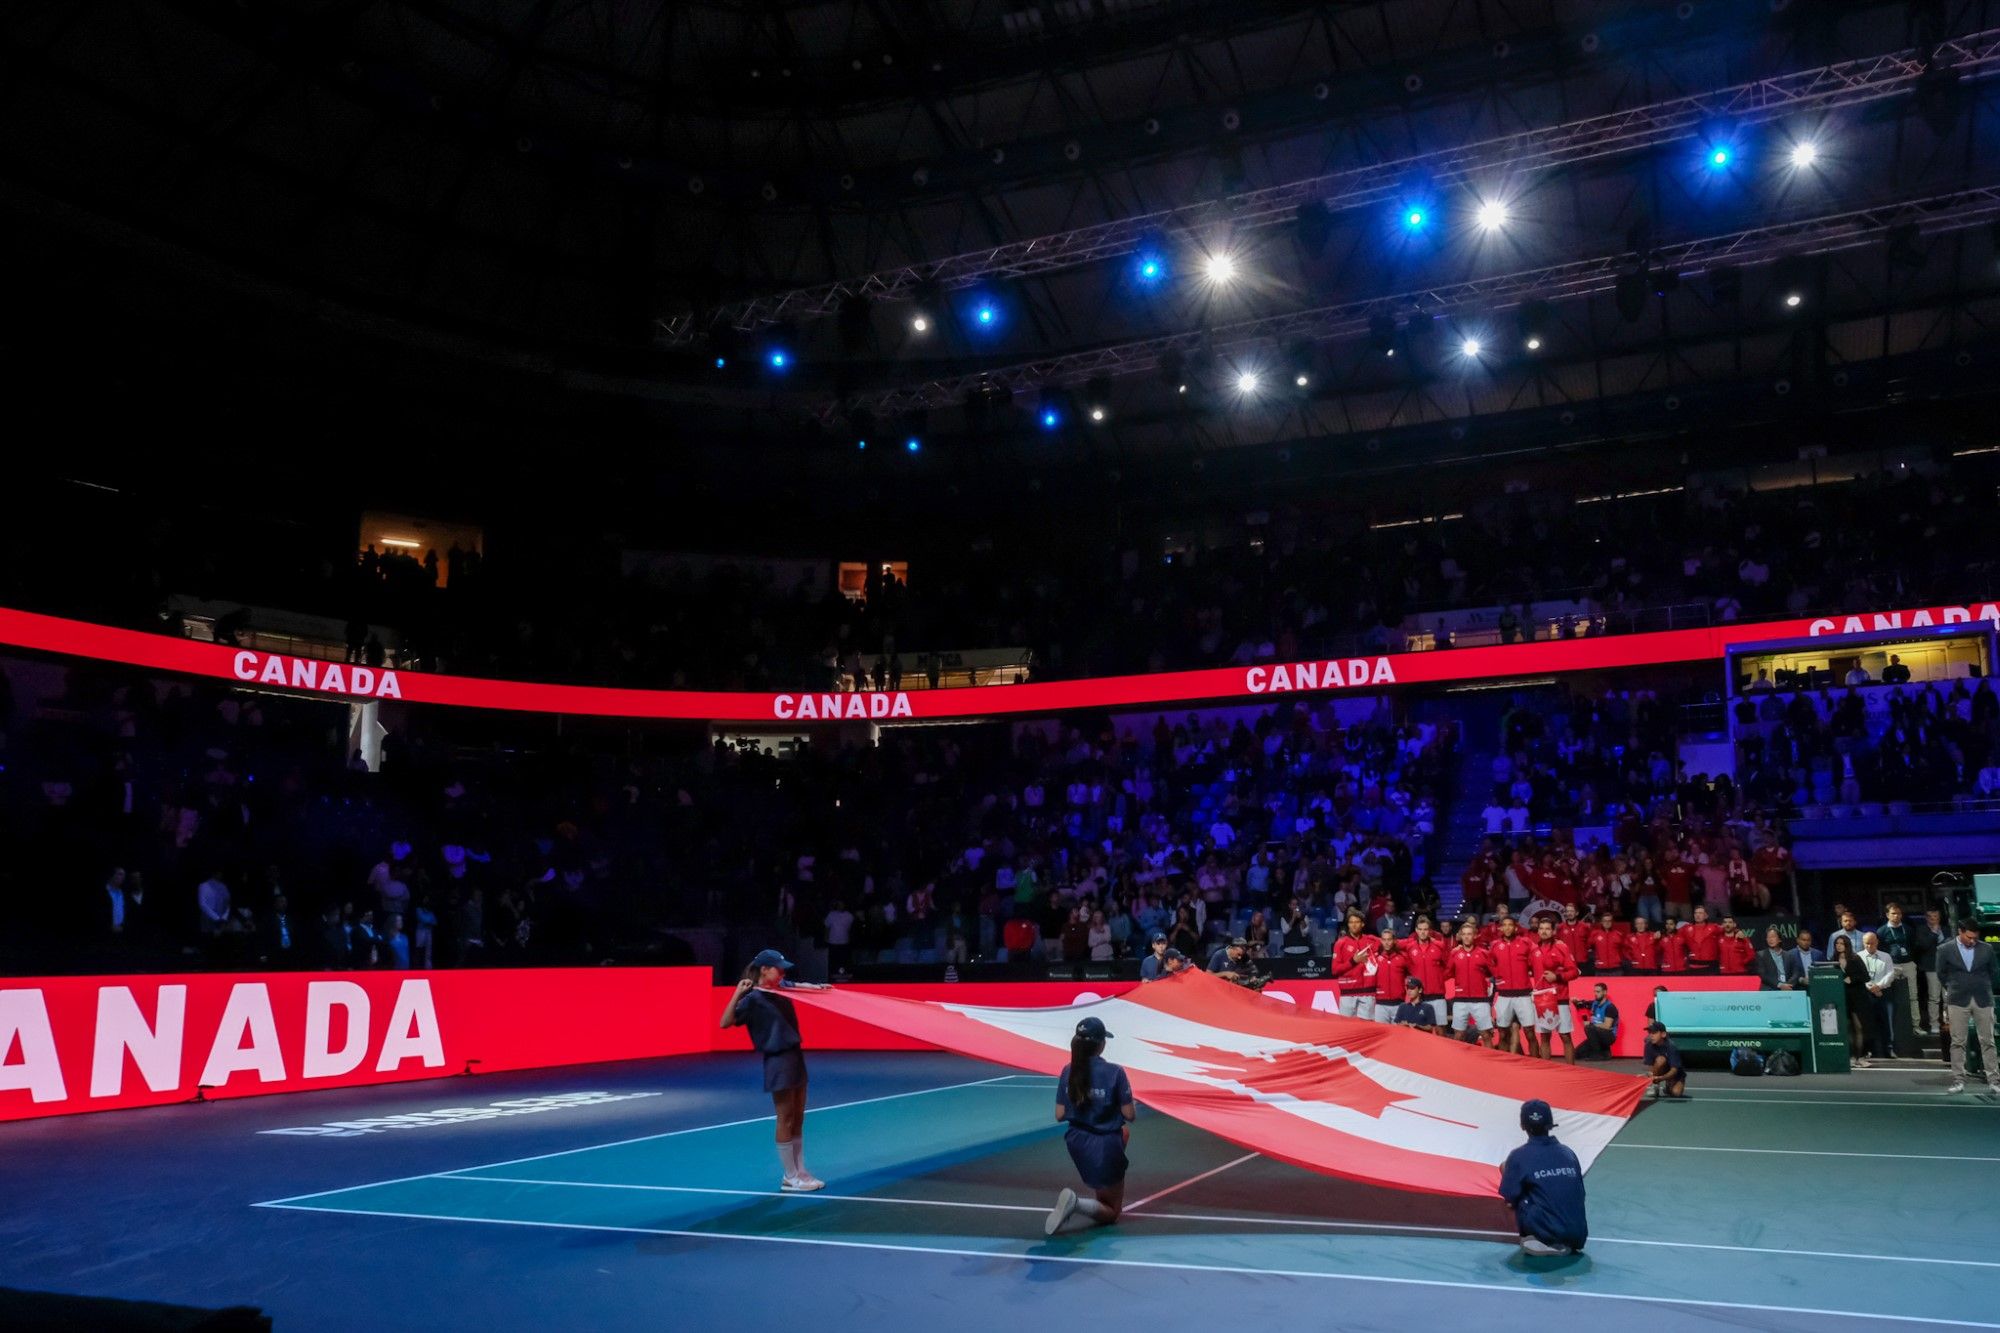 Copa Davis en Málaga | La gran final entre Australia y Canadá, en imágenes